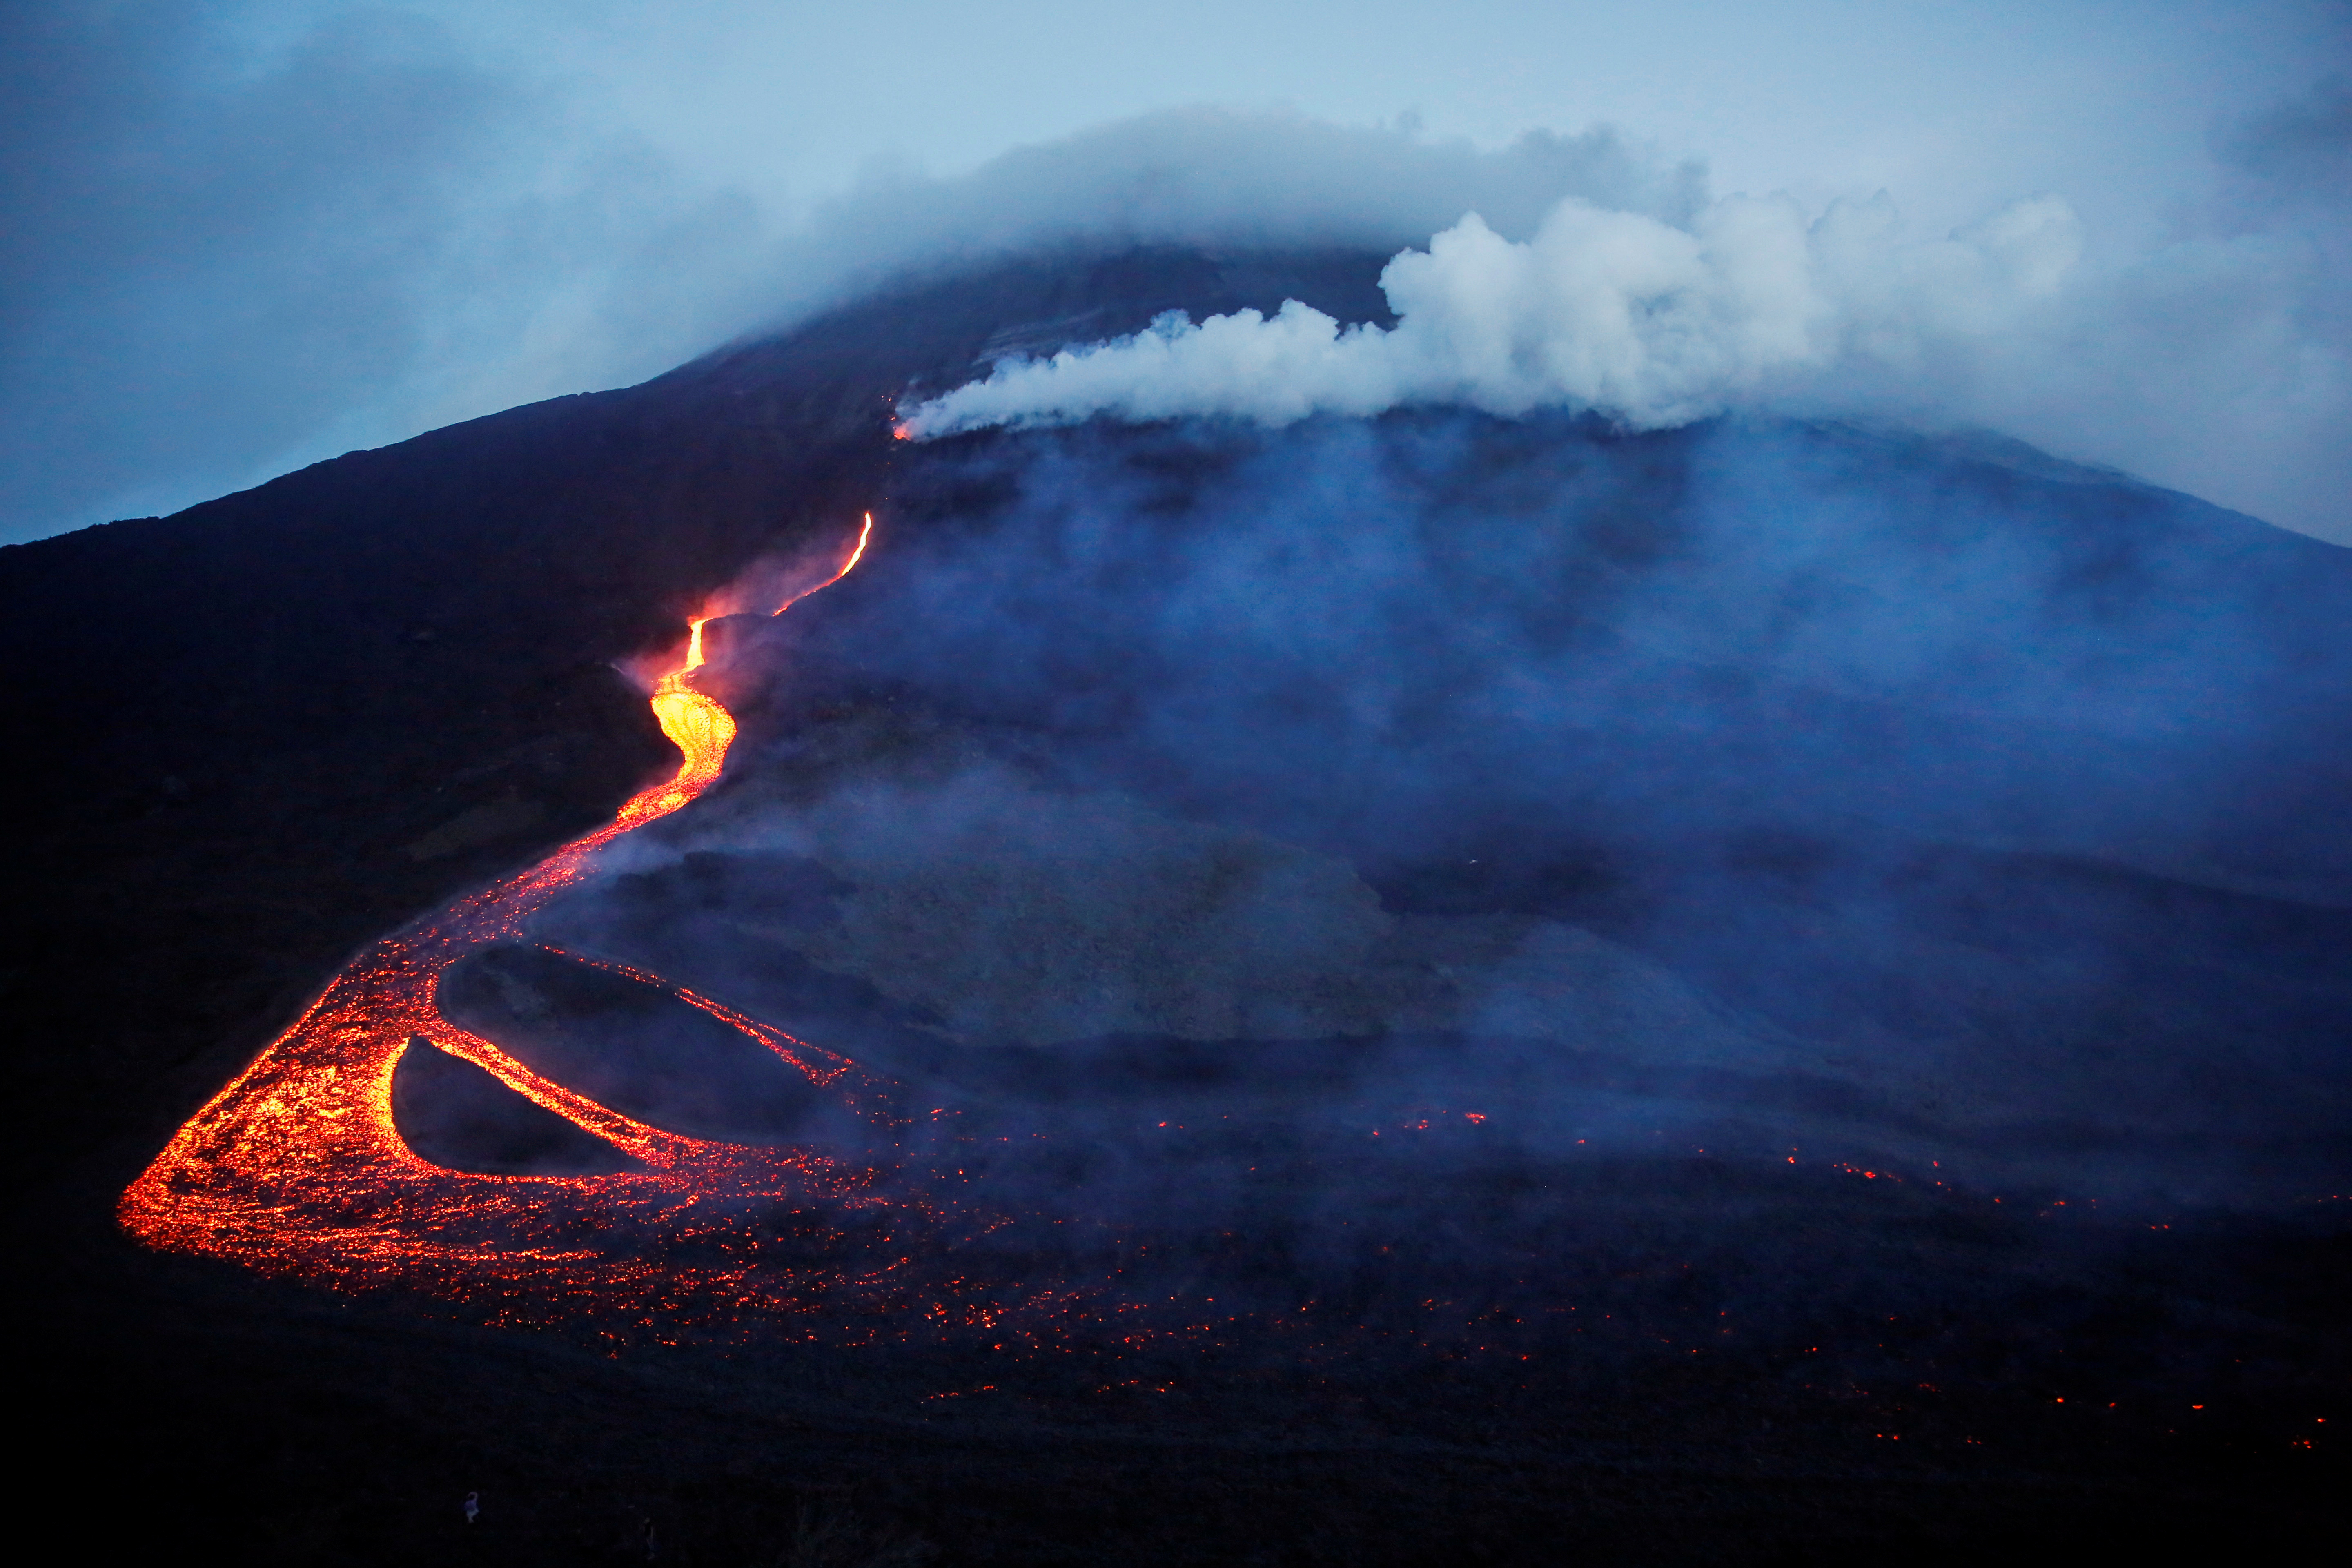 El volcán provoca una “fuente incandescente” de lava que sobrepasa los 500 metros sobre el cráter, agregó el Insivumeh. (ARCHIVO/Reuters)